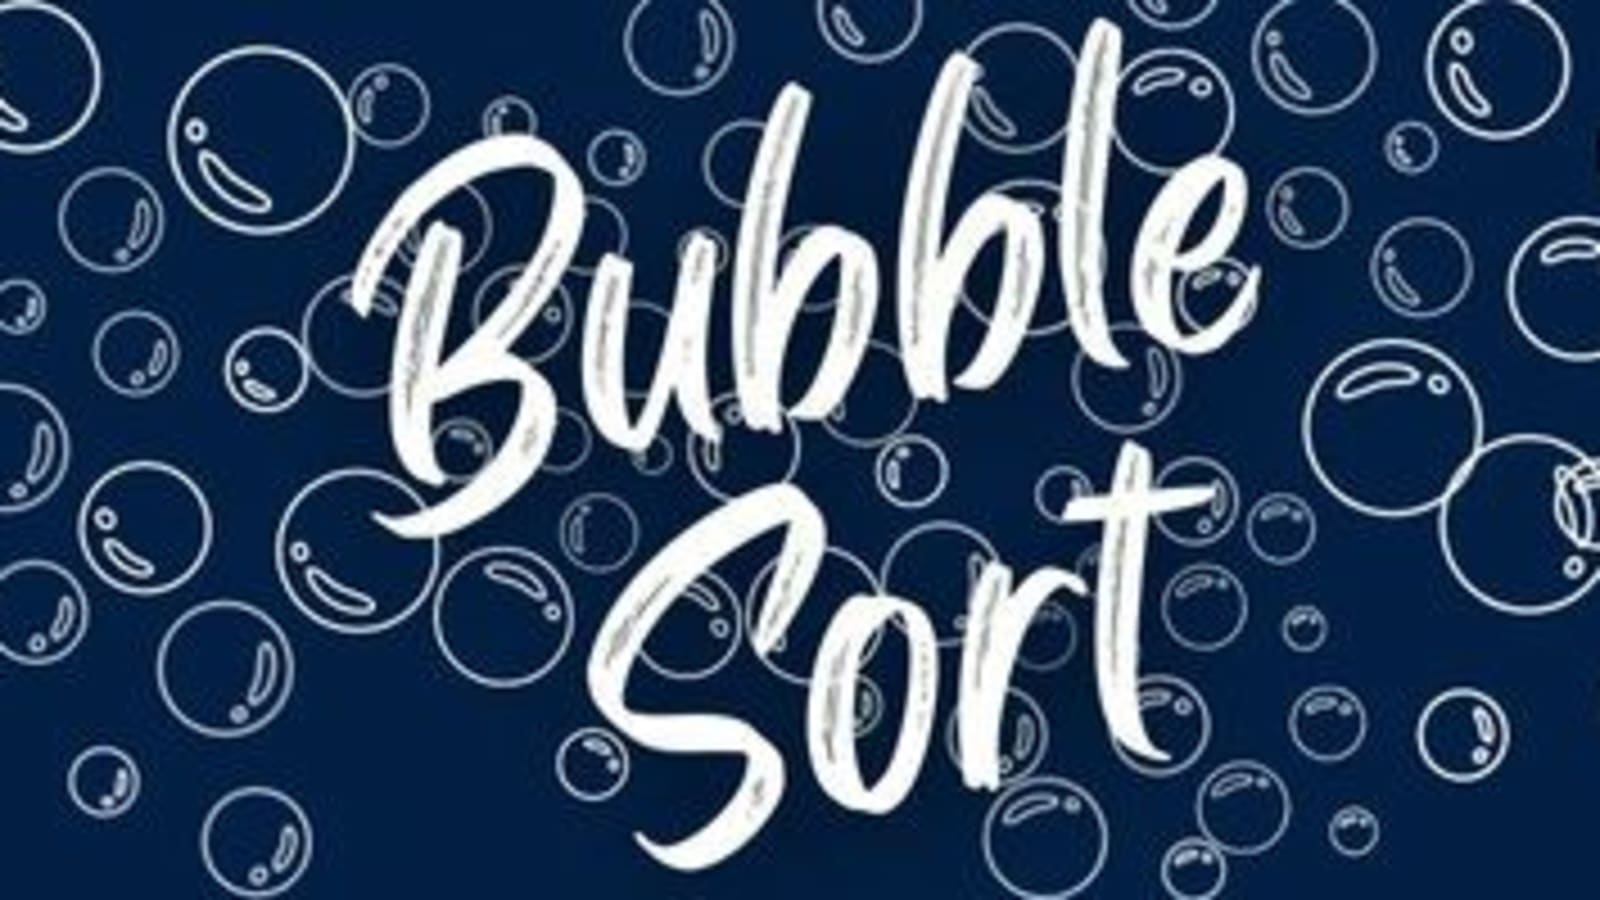 Bubble sort algorithm - DEV Community